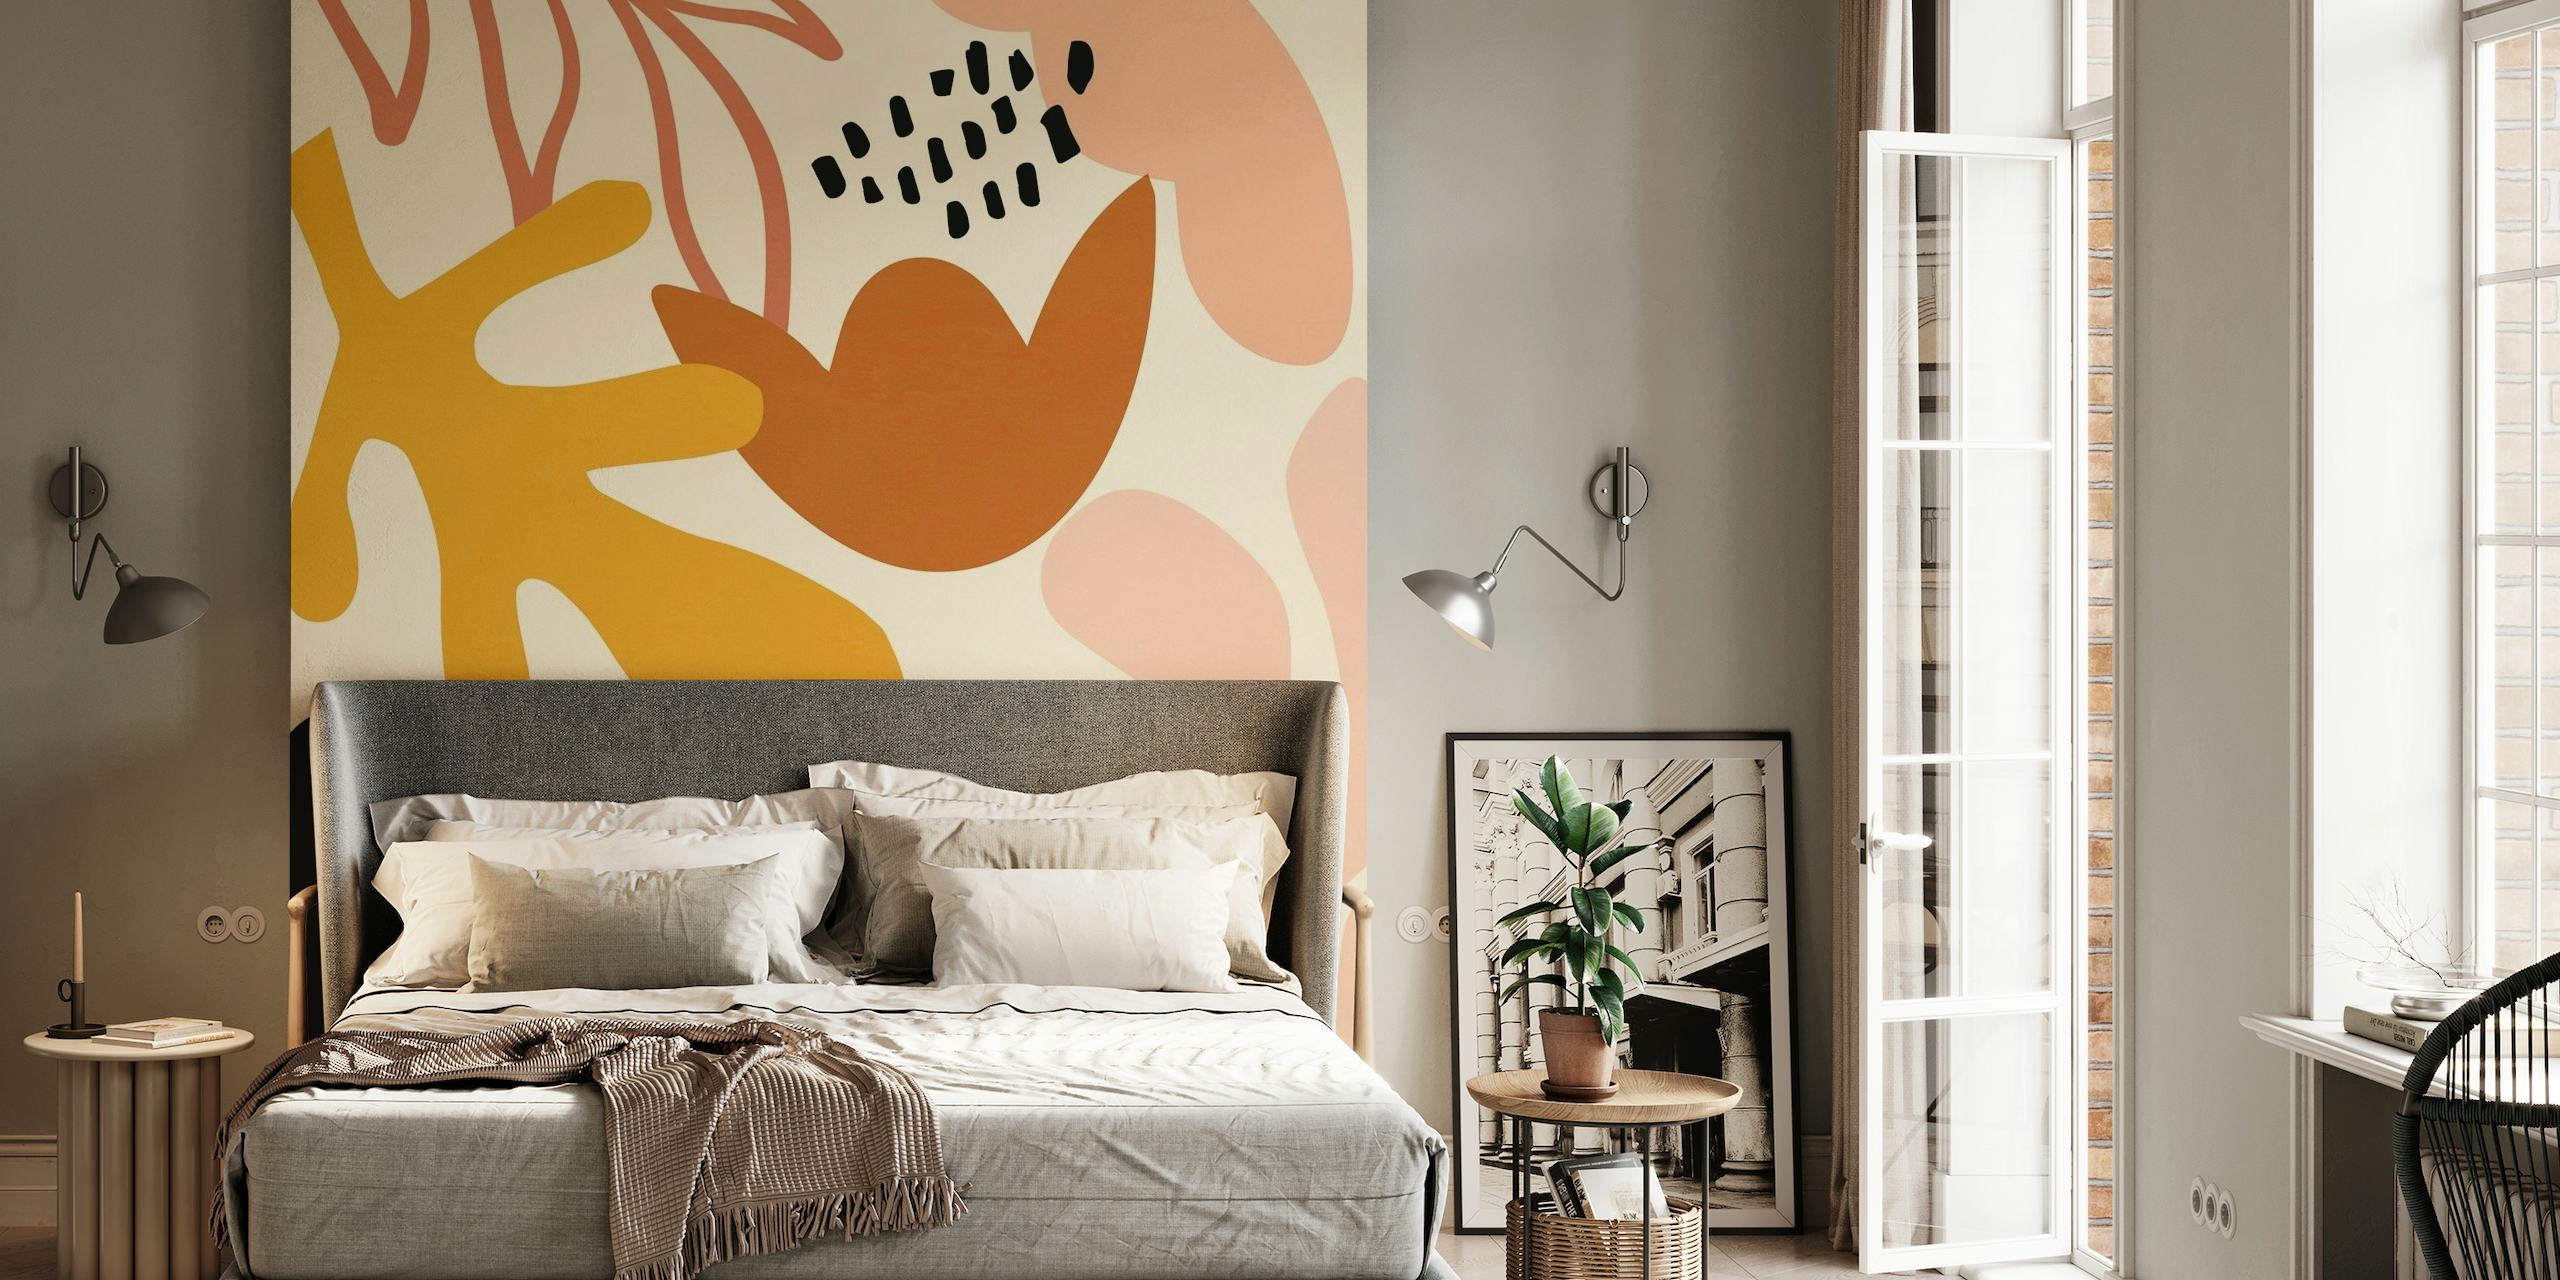 Abstract fotobehang met herfstthema met moderne vormen in gebrand oranje, mosterdgeel en diepzwart op een pastelachtergrond.